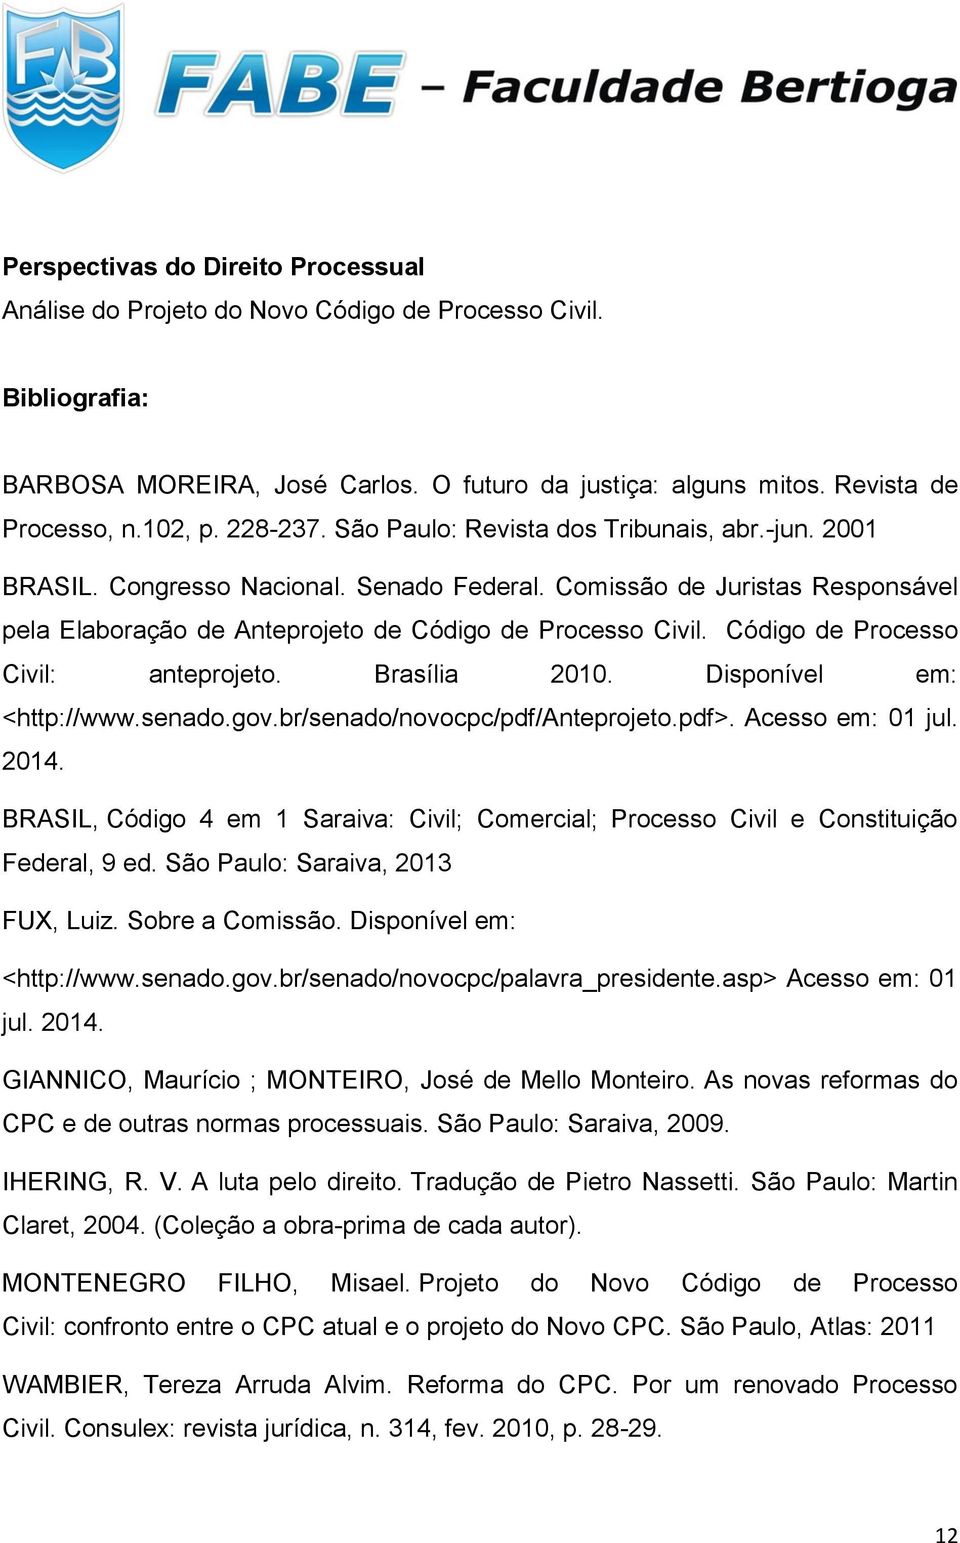 Código de Processo Civil: anteprojeto. Brasília 2010. Disponível em: <http://www.senado.gov.br/senado/novocpc/pdf/anteprojeto.pdf>. Acesso em: 01 jul. 2014.